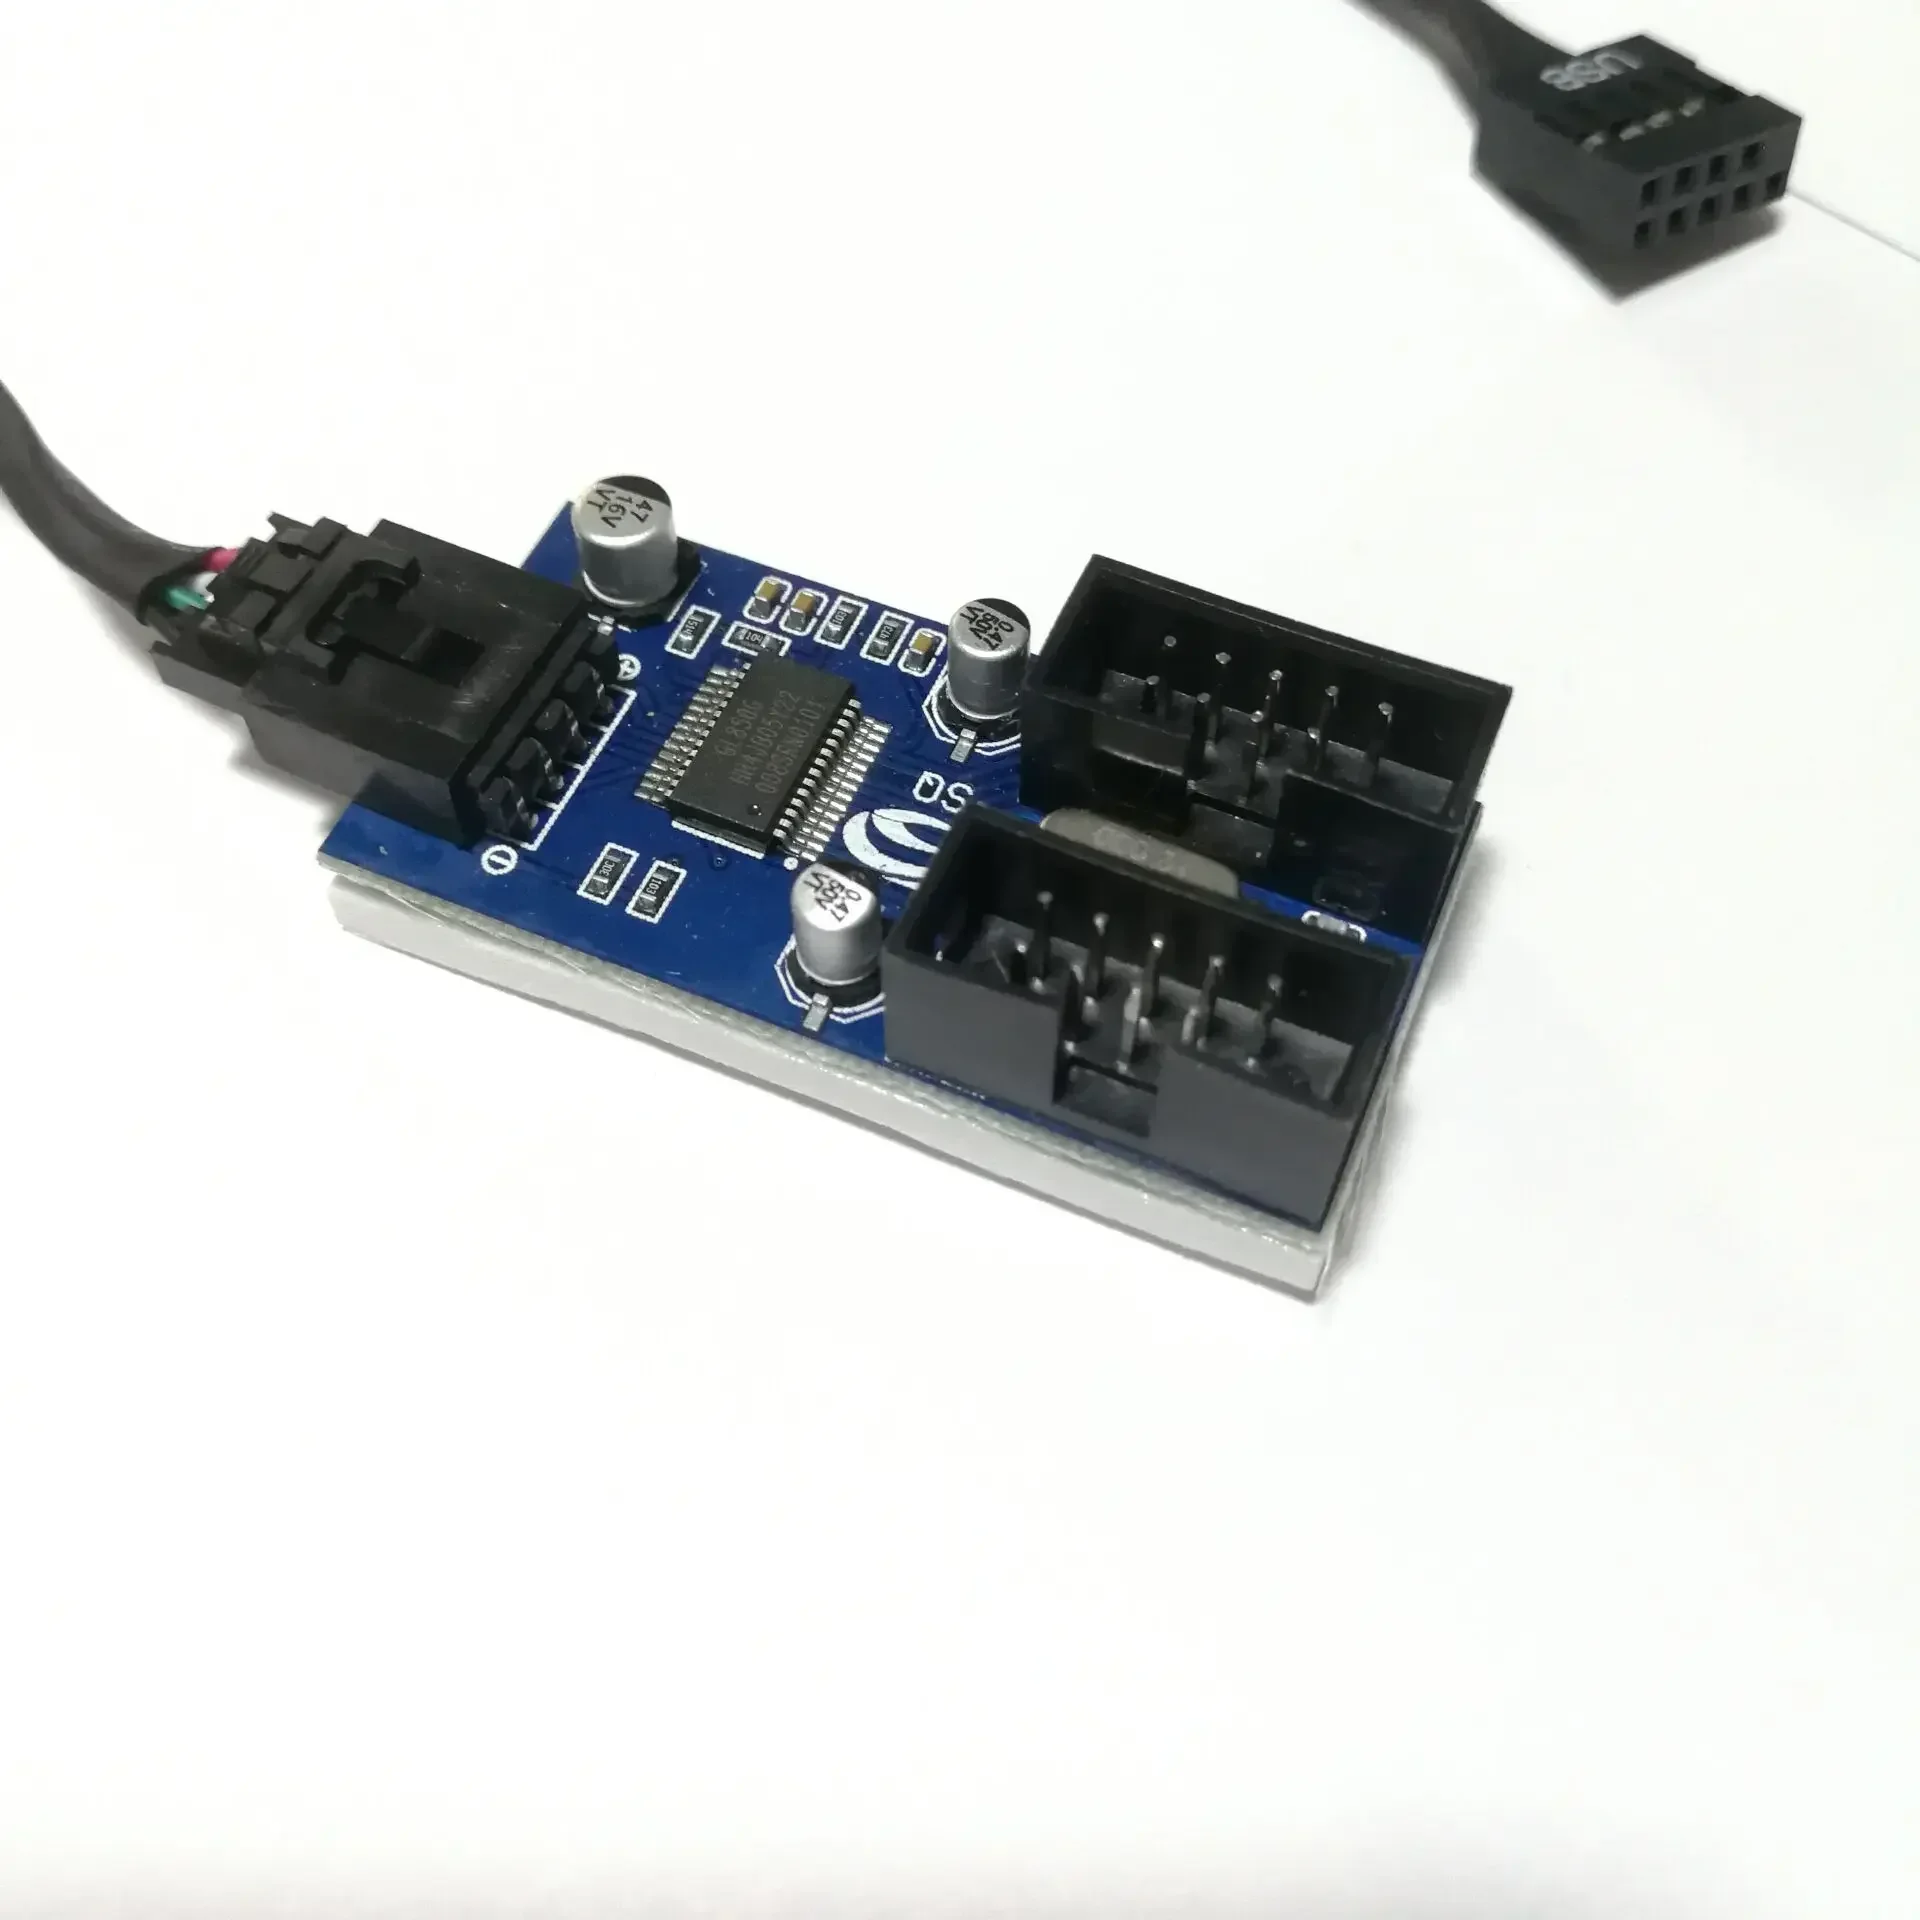 Placa base con conector interno de 9 pines, conector USB 1To2, divisor de Chipset, versión mejorada, adaptador de tarjeta extensora, Cable de ordenador